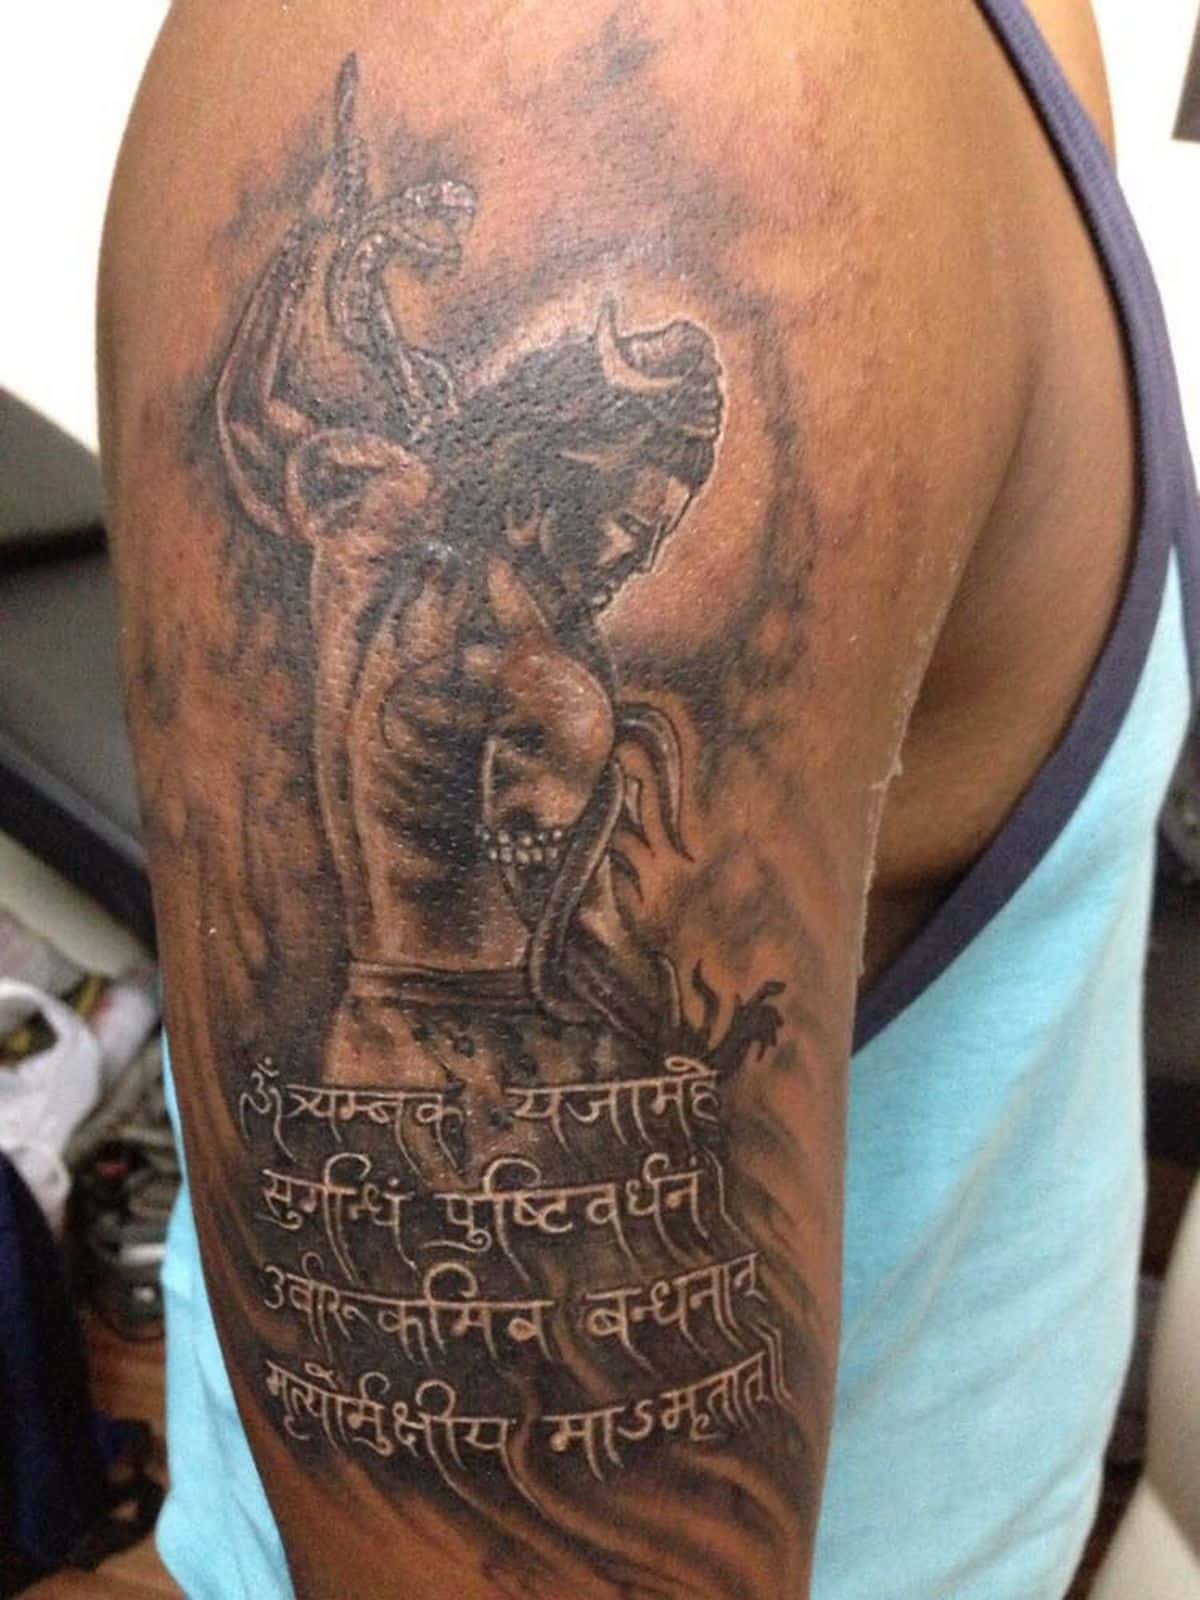 Bhole nath trishul tattoo | Tattoos, Trishul, Tattoo studio